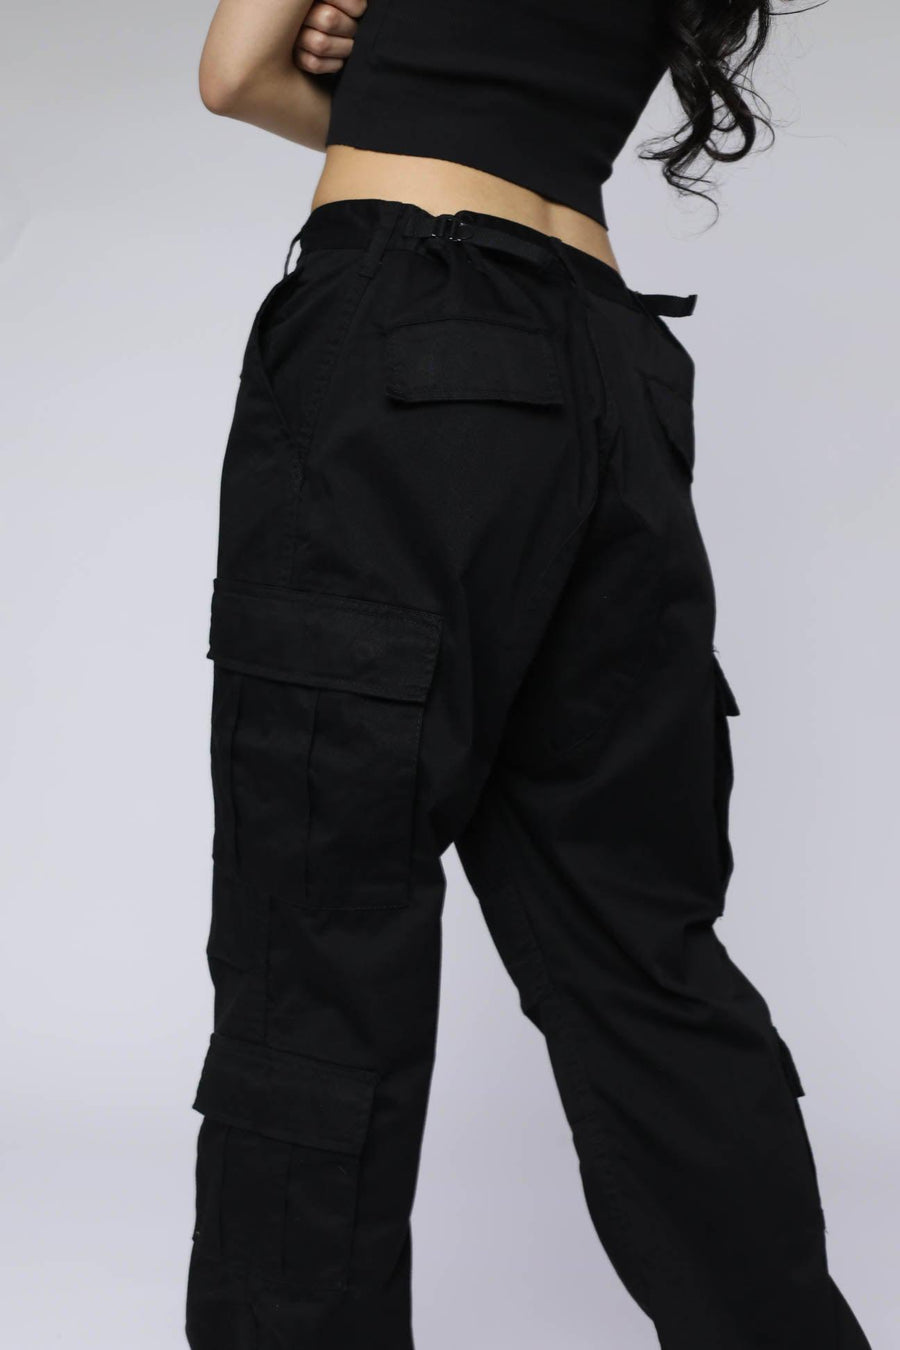 Black BDU Pants - XL